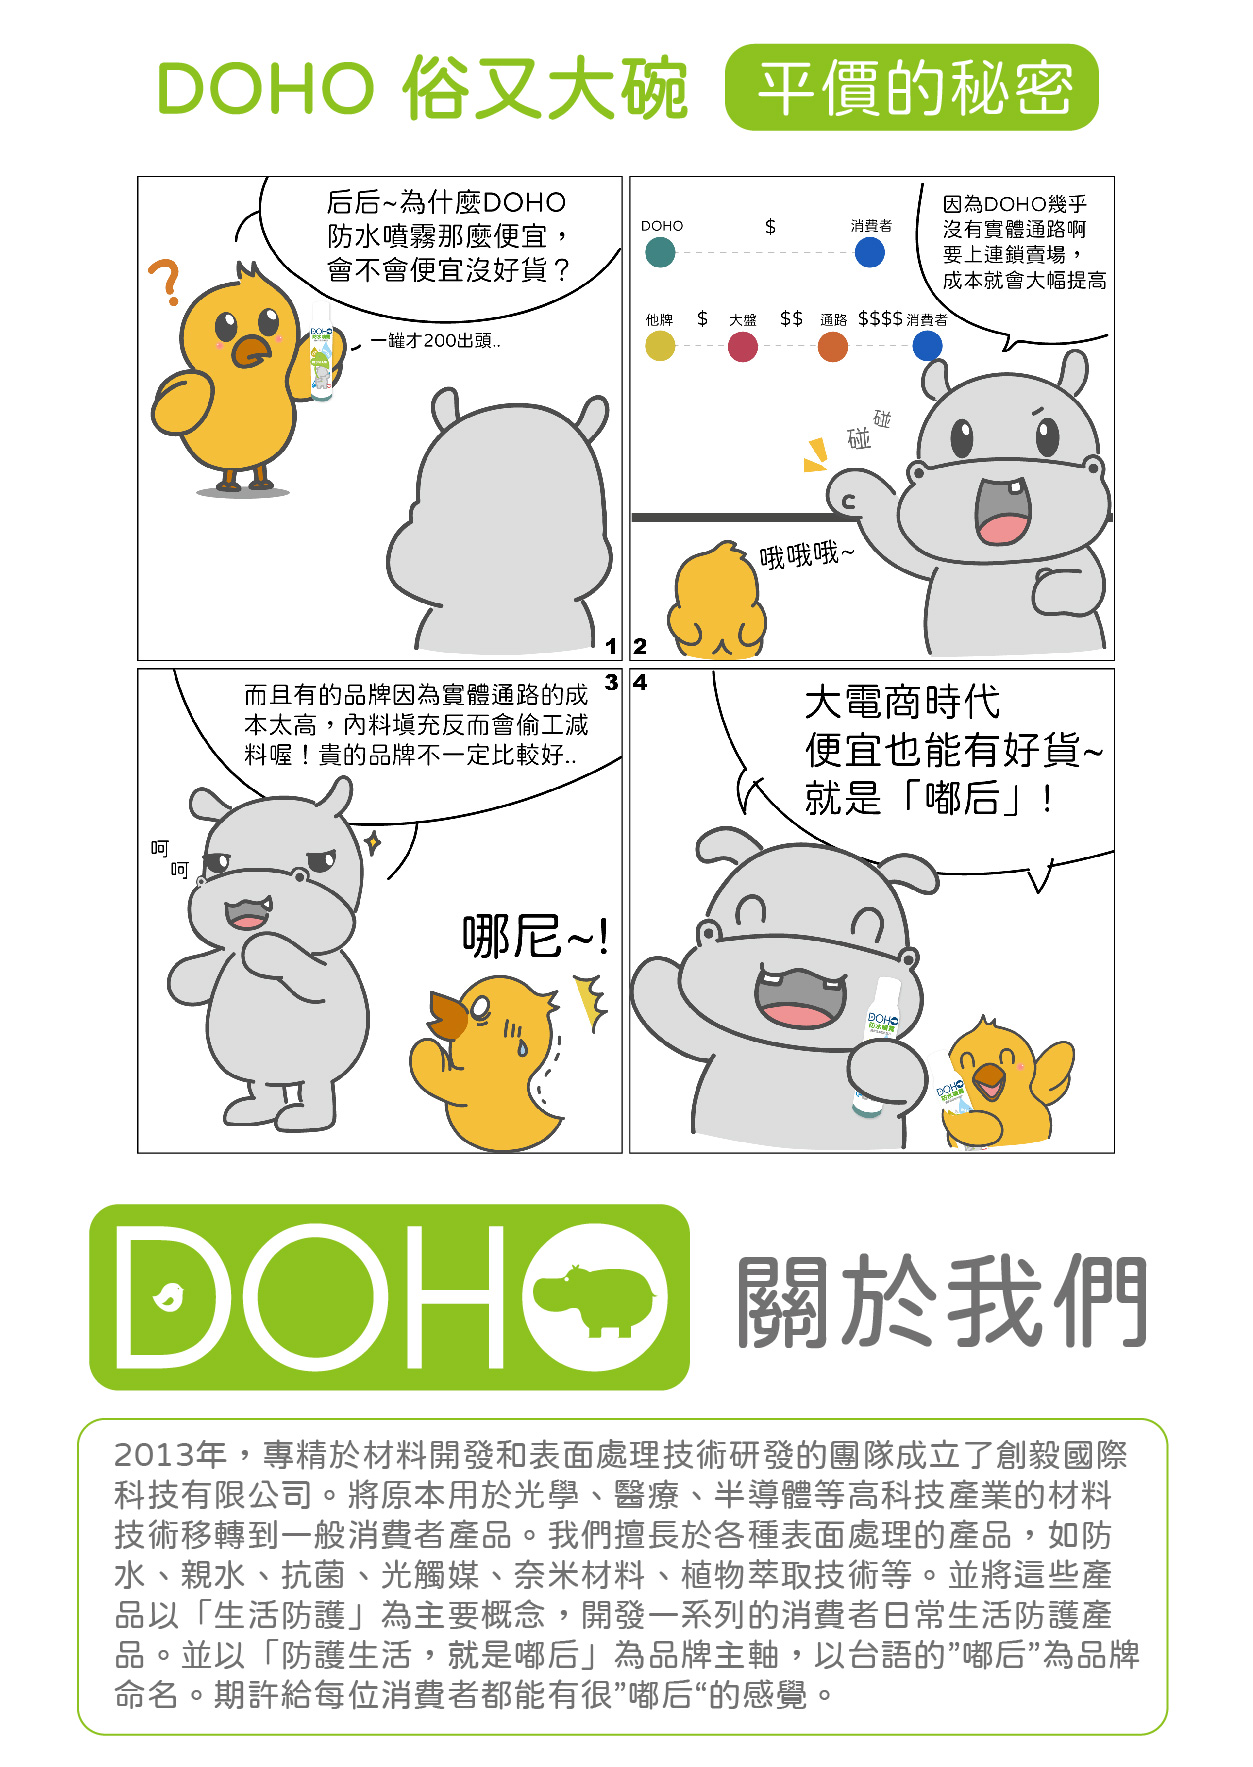       【2入組】DOHO 日本奈米防水噴霧(雨天剋星 防潑水 防水噴霧 